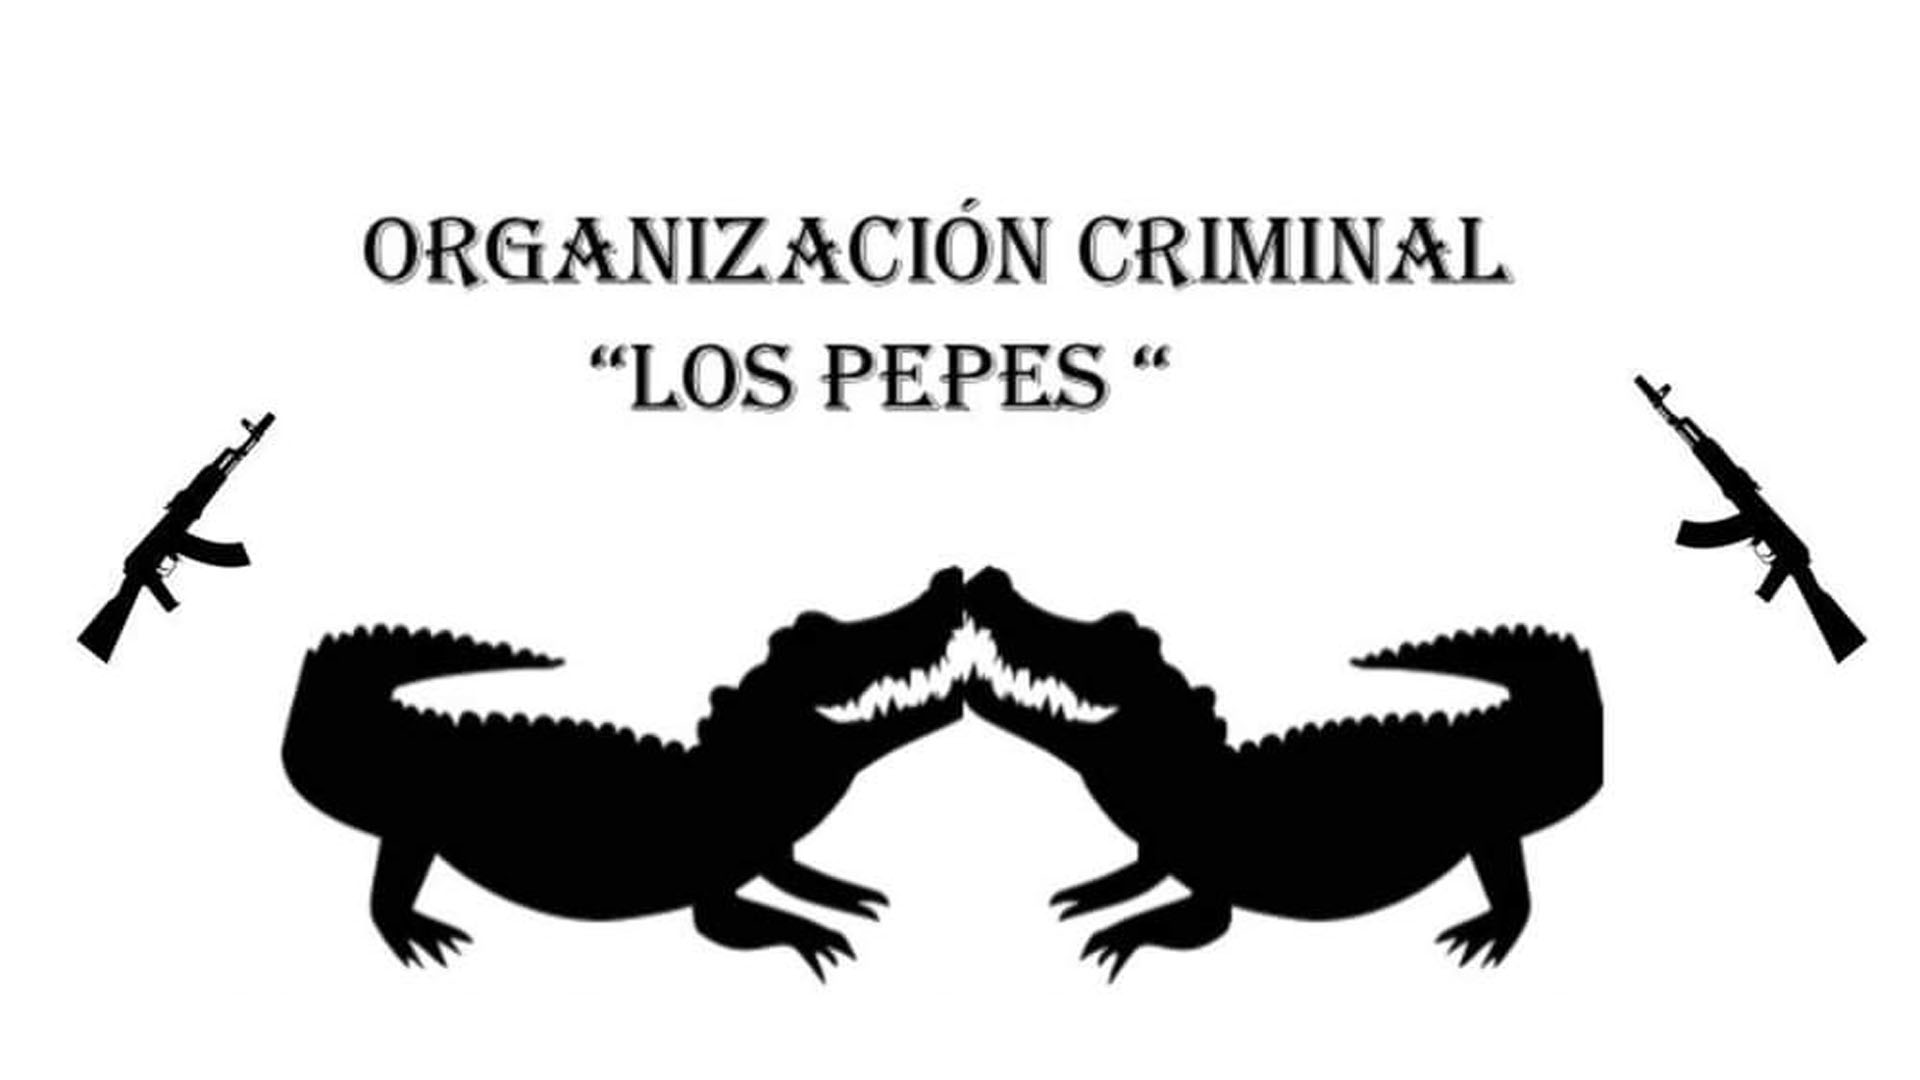 Imagen de la banda delincuencial Los Pepes